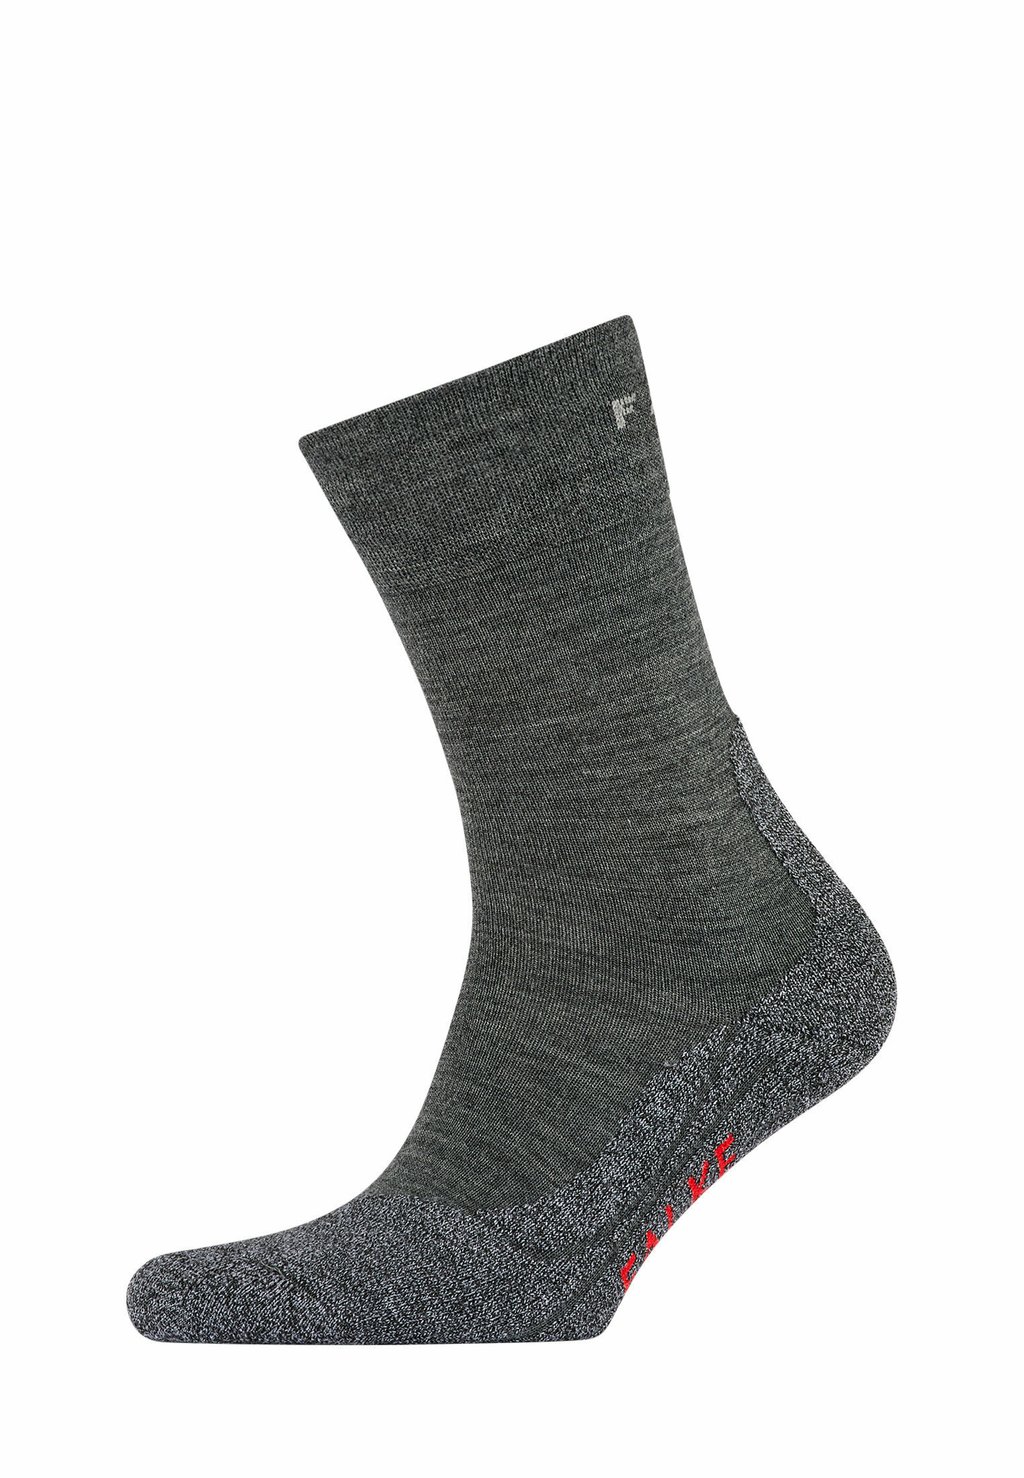 Спортивные носки TK2 EXPLORE SENSITIVE TREKKING FUNCTIONAL SOFT TOP MEDIUM-CUSHIONED FALKE, цвет asphalt mel. (3180)